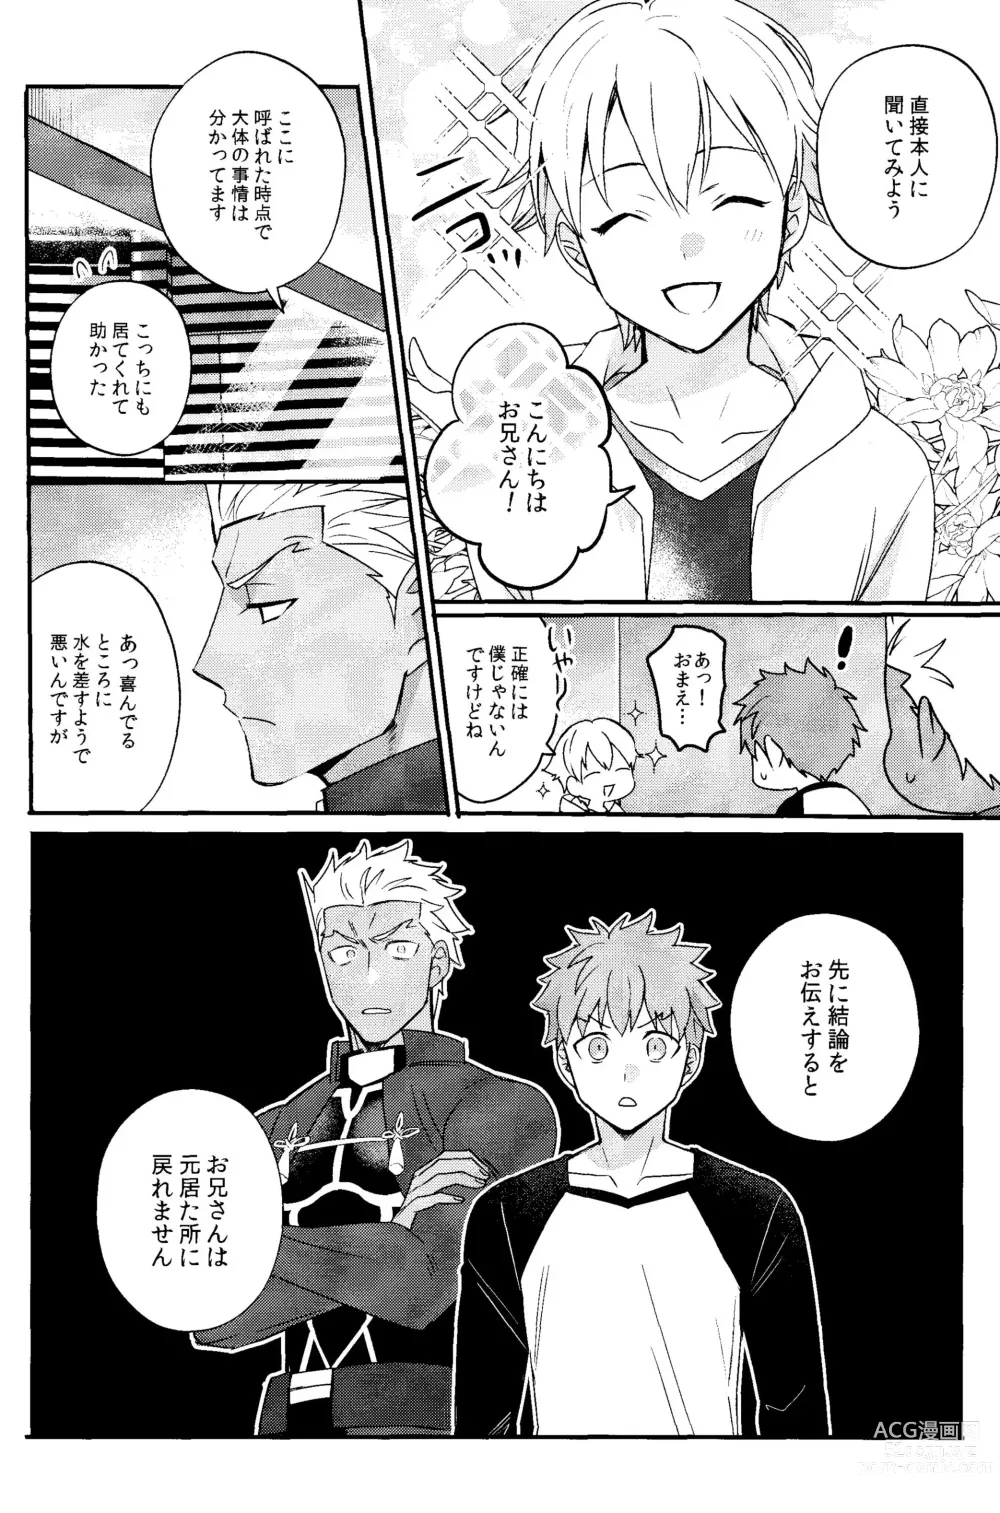 Page 23 of doujinshi Iru